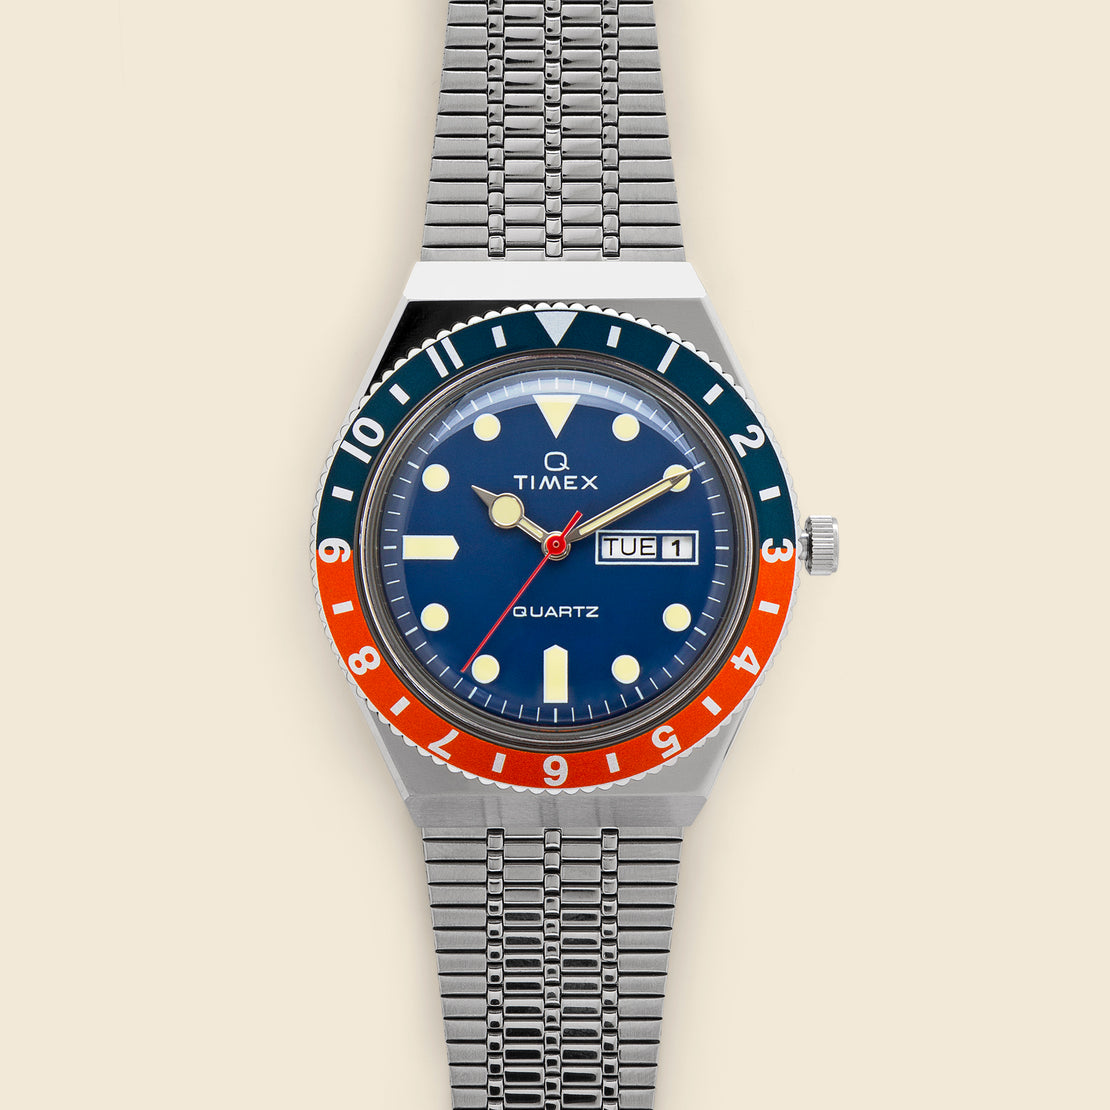 Timex Q Timex Reissue 38mm Bracelet Watch - Stainless Steel/Blue/Orange